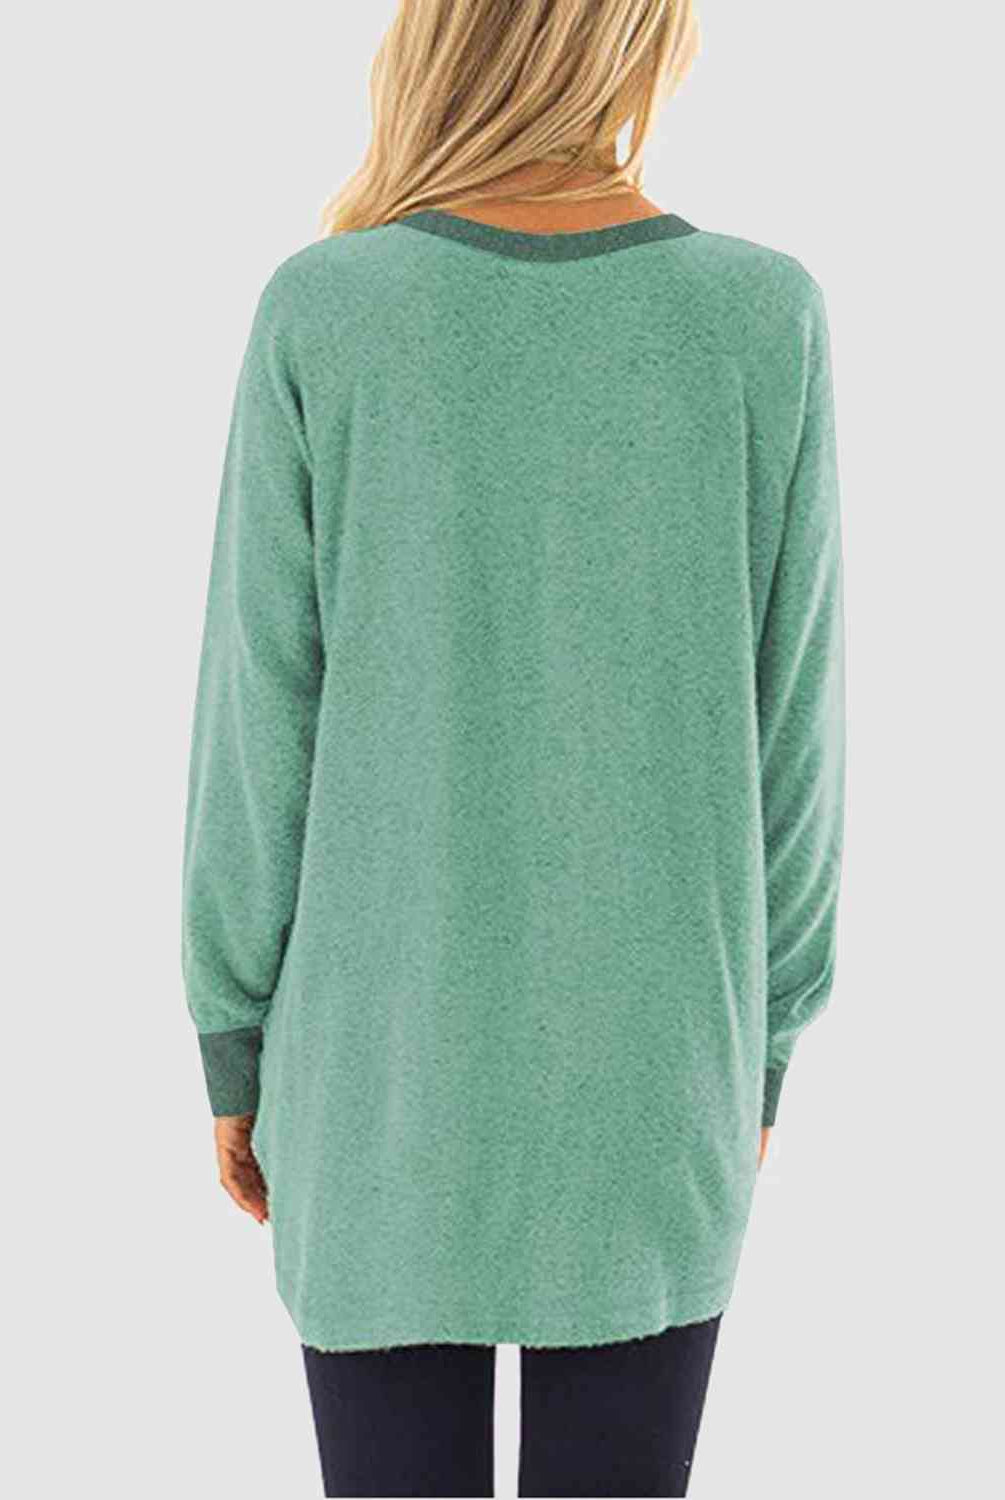 Graphic Round Neck Sweatshirt with Pockets - GemThreads Boutique